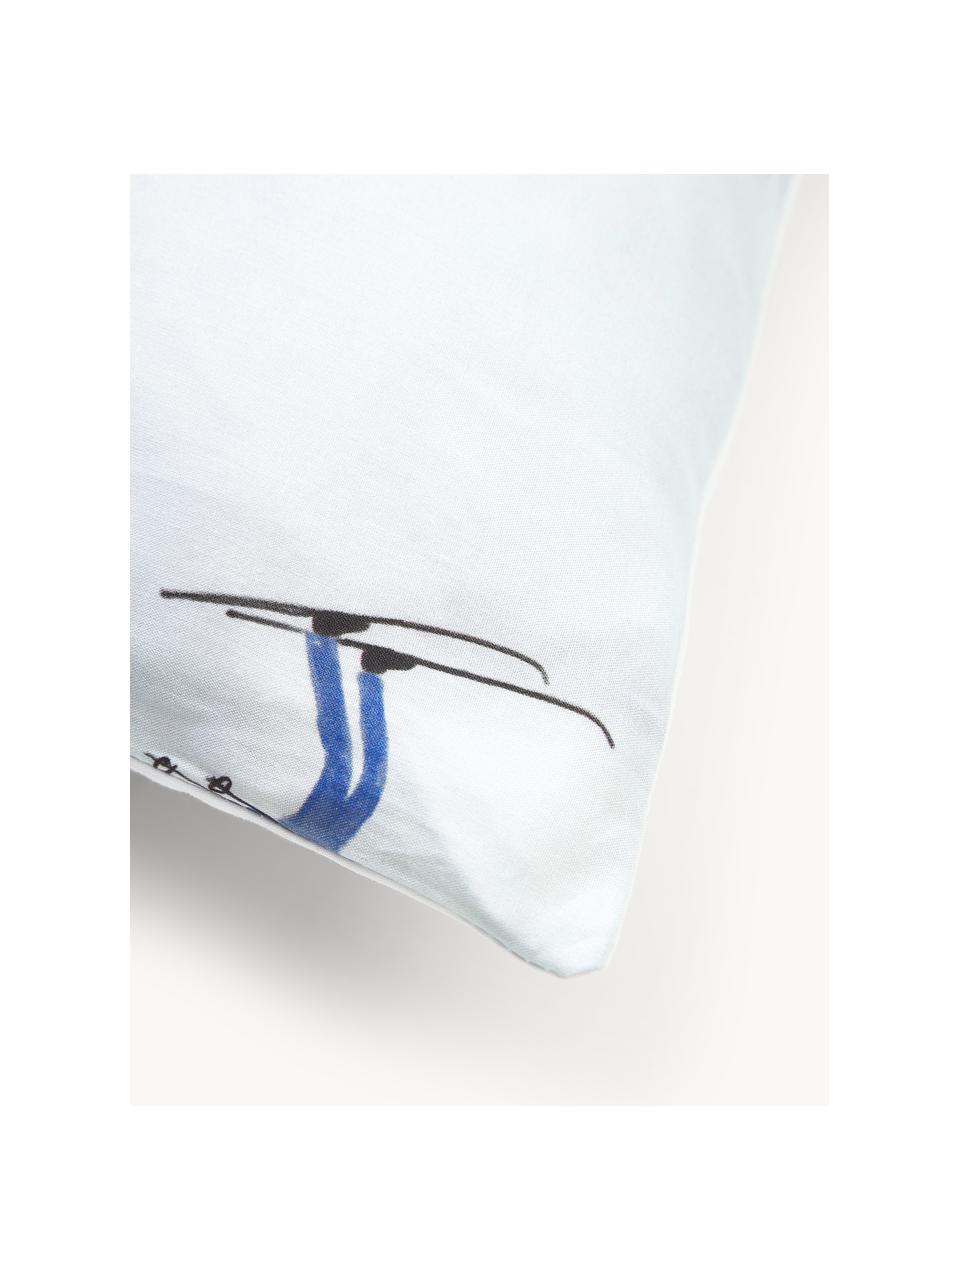 Funda de almohada de percal Ski, diseño Kera Till, Azul claro, blanco, An 45 x L 110 cm